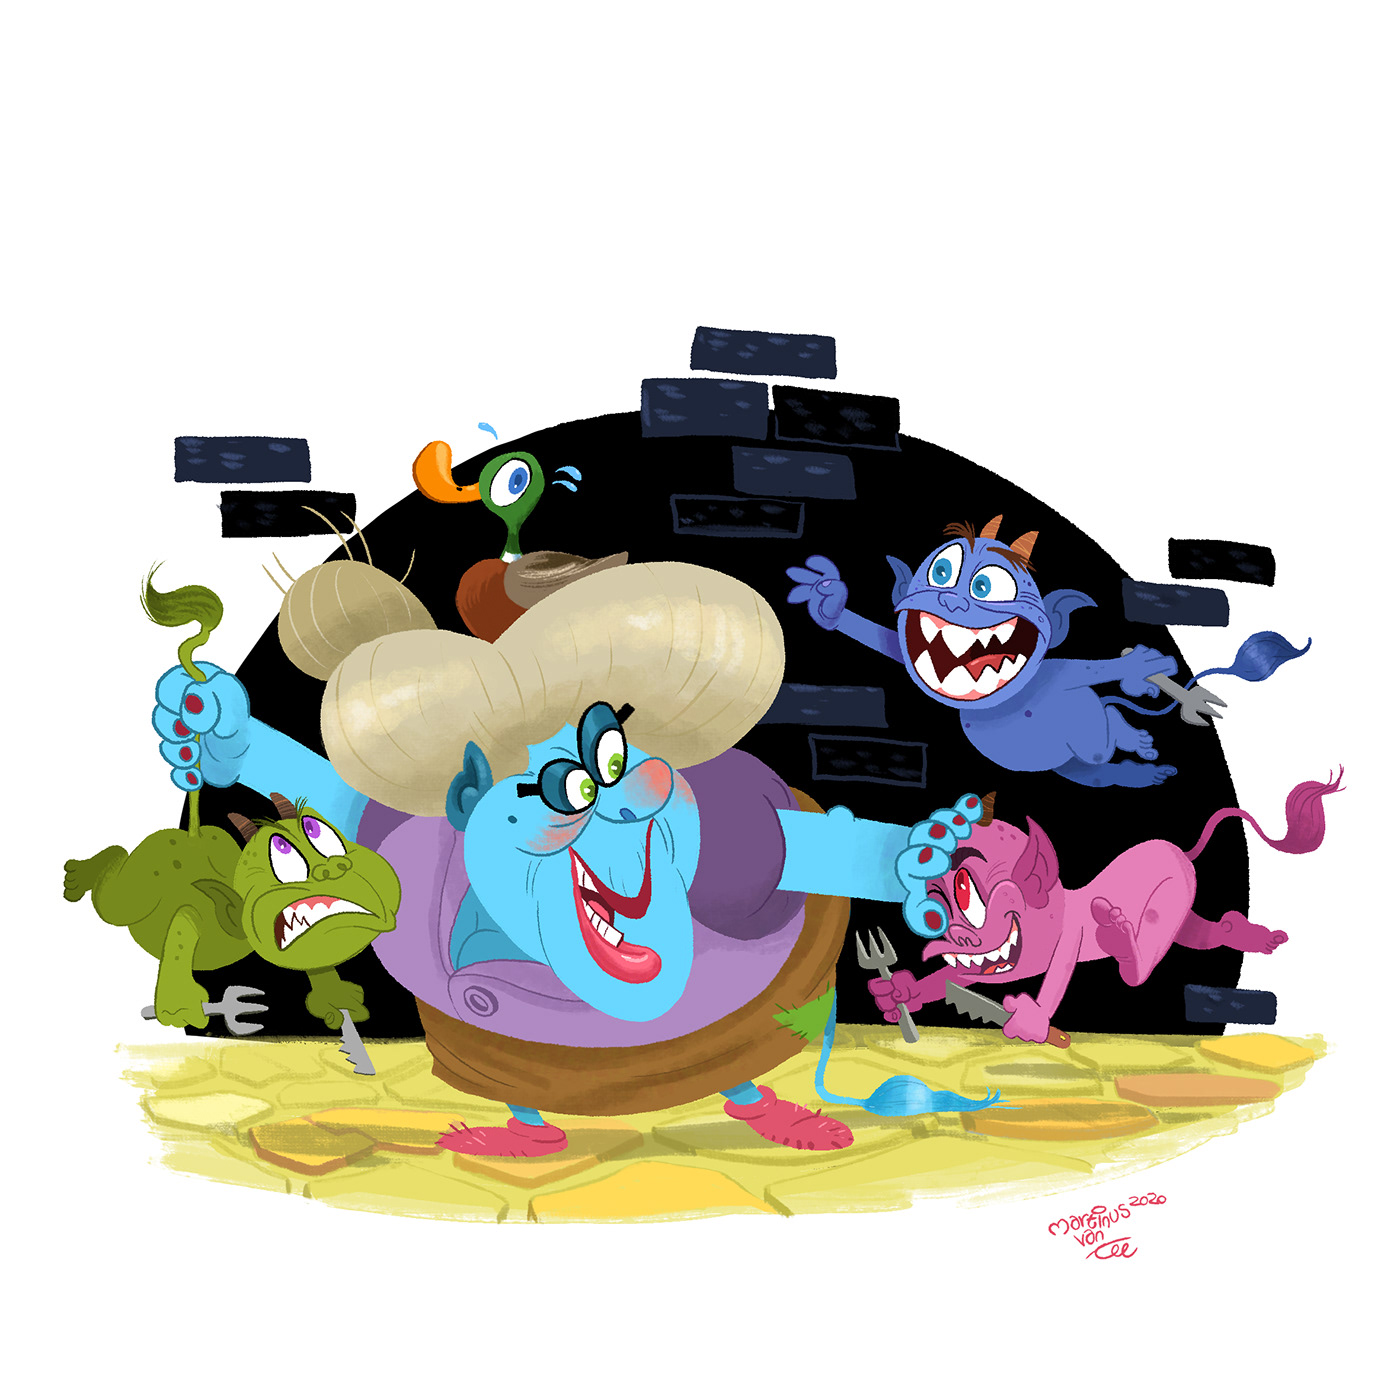 cartoon children's book digital illustration goblin ILLUSTRATION  kidlitart ogre troll